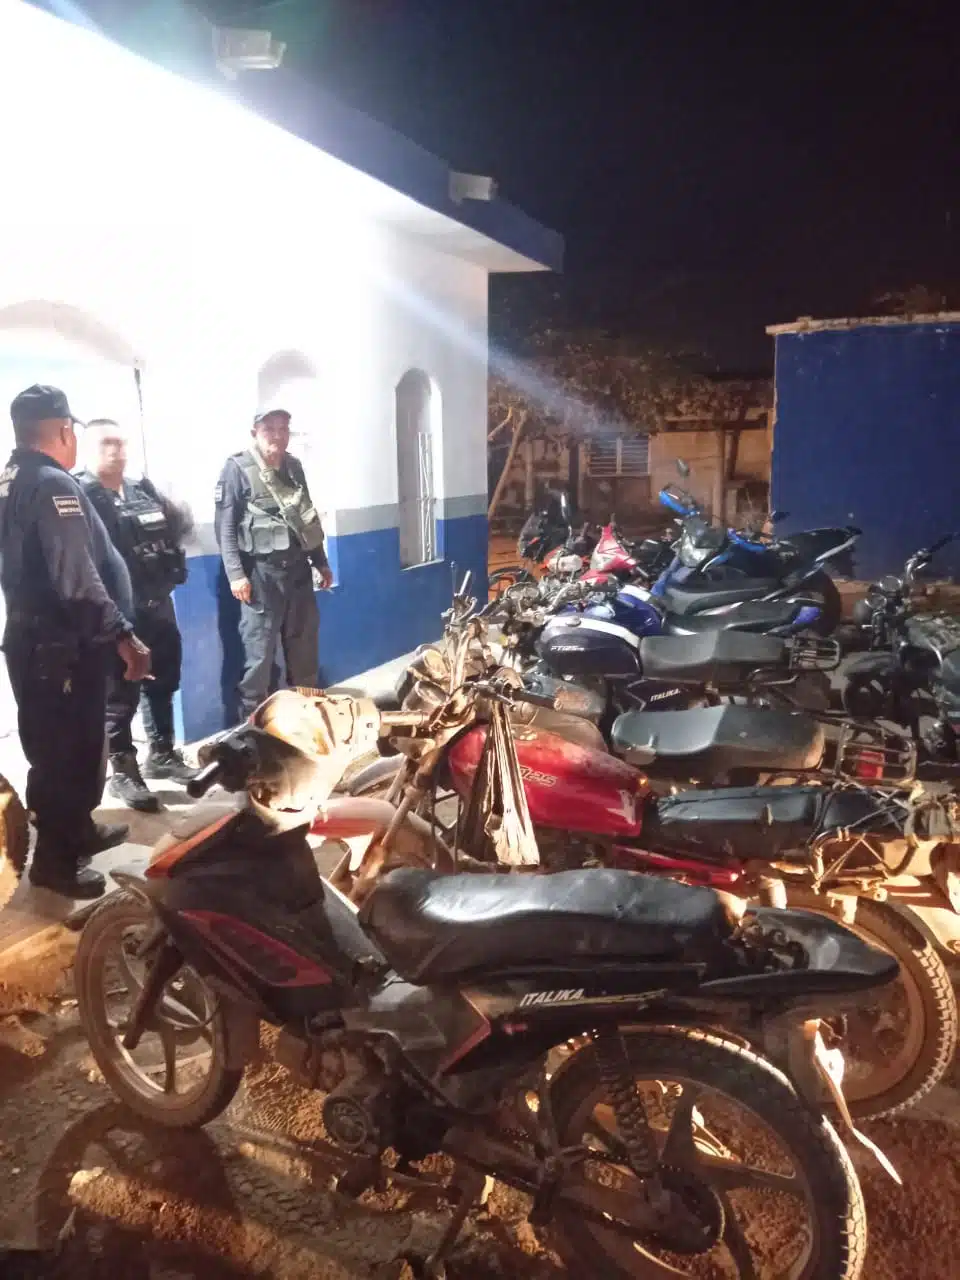 Durante el operativo, los policías retuvieron 17 motocicletas.